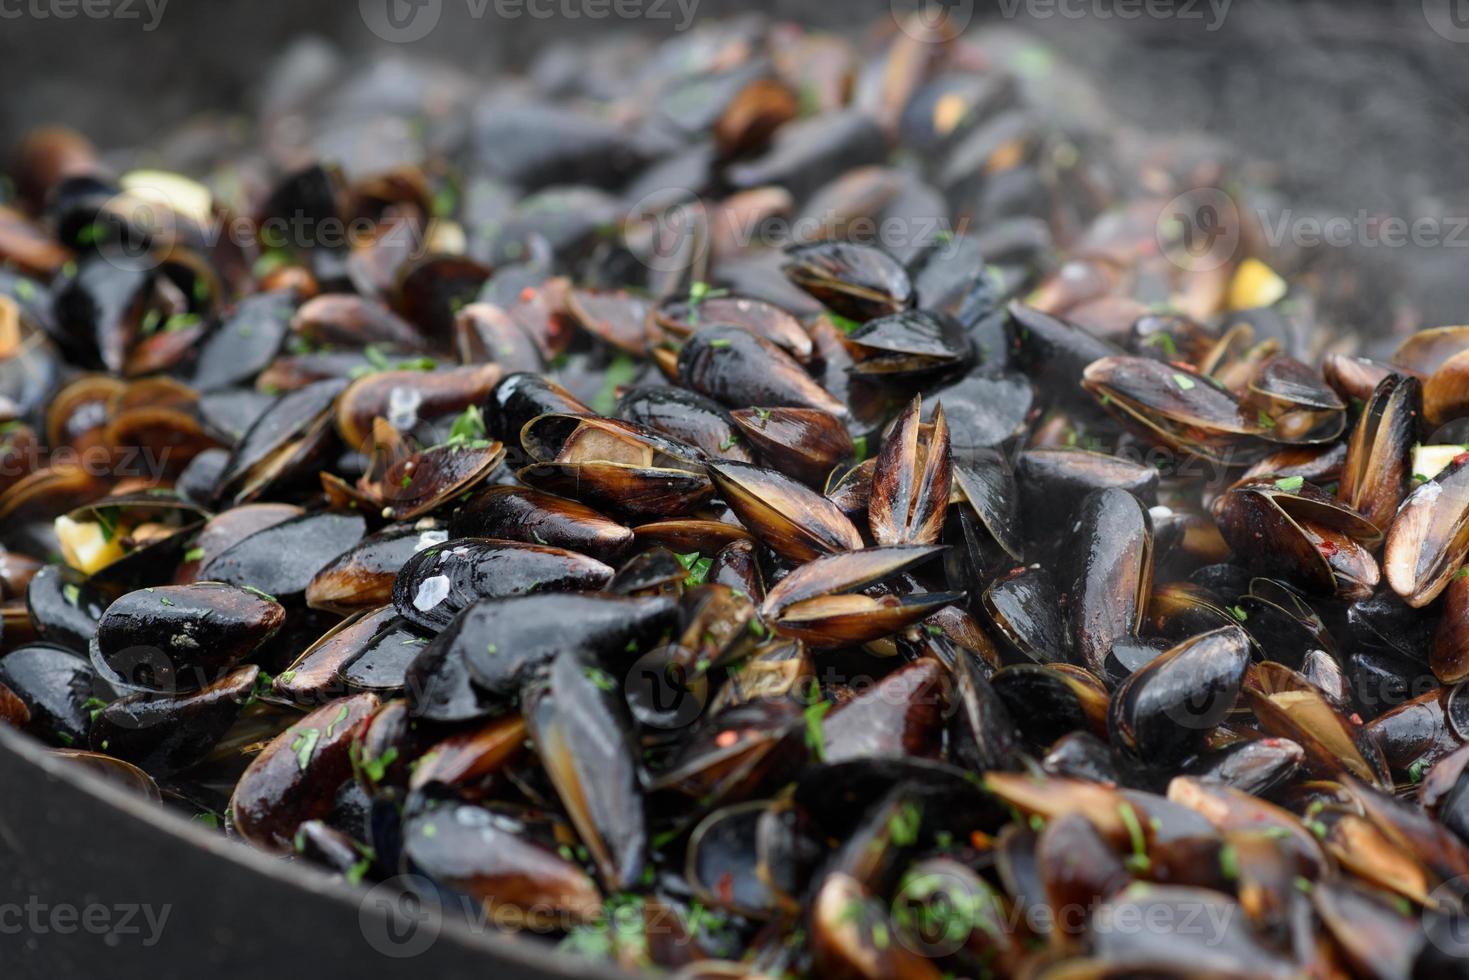 primer plano de mejillones cocidos en un festival de comida callejera, listo para comer mariscos fotografiados con enfoque suave foto